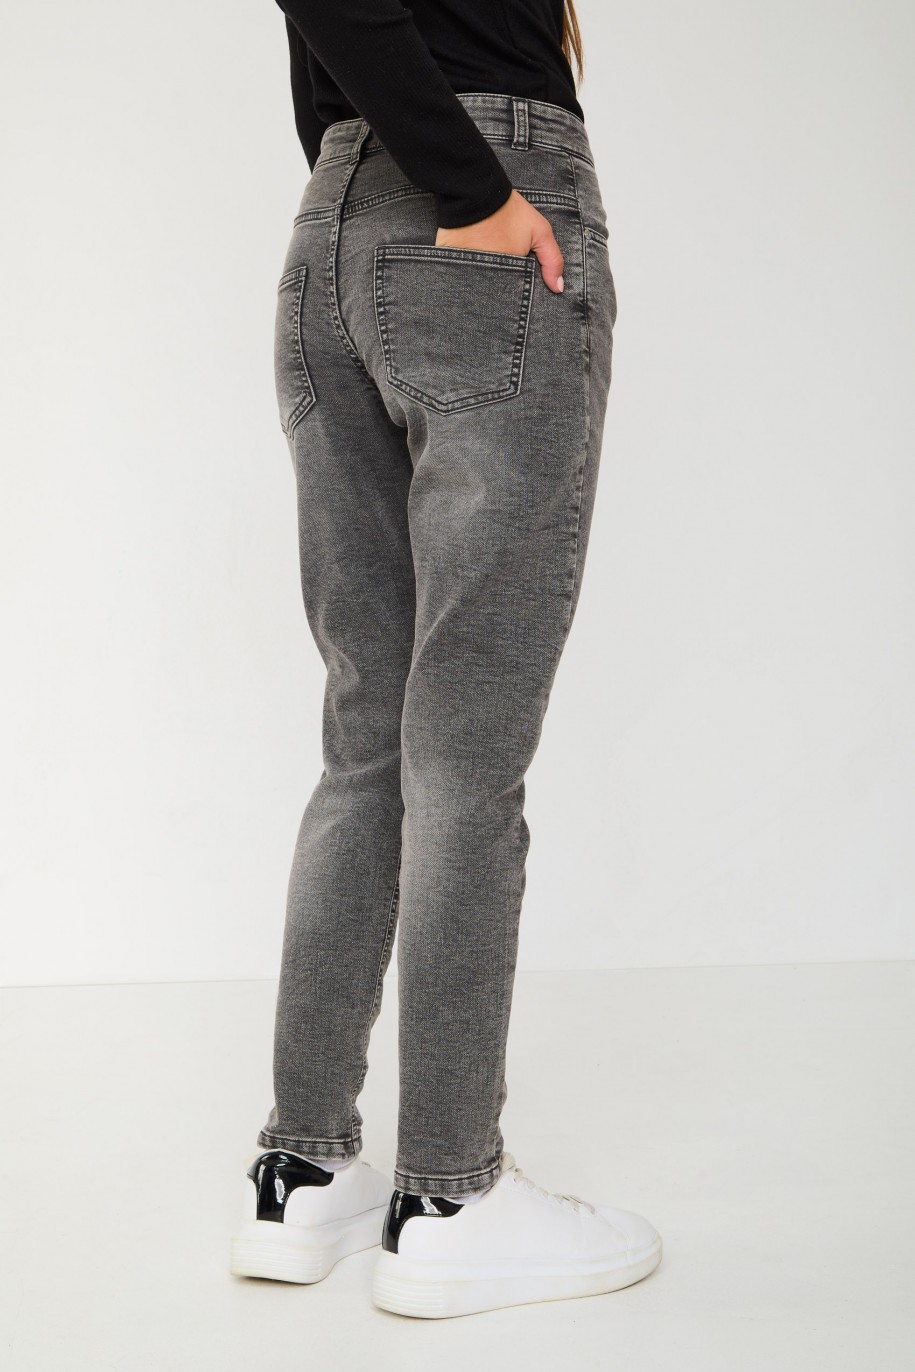 Szare jeansowe spodnie typu BAGGY - 43845